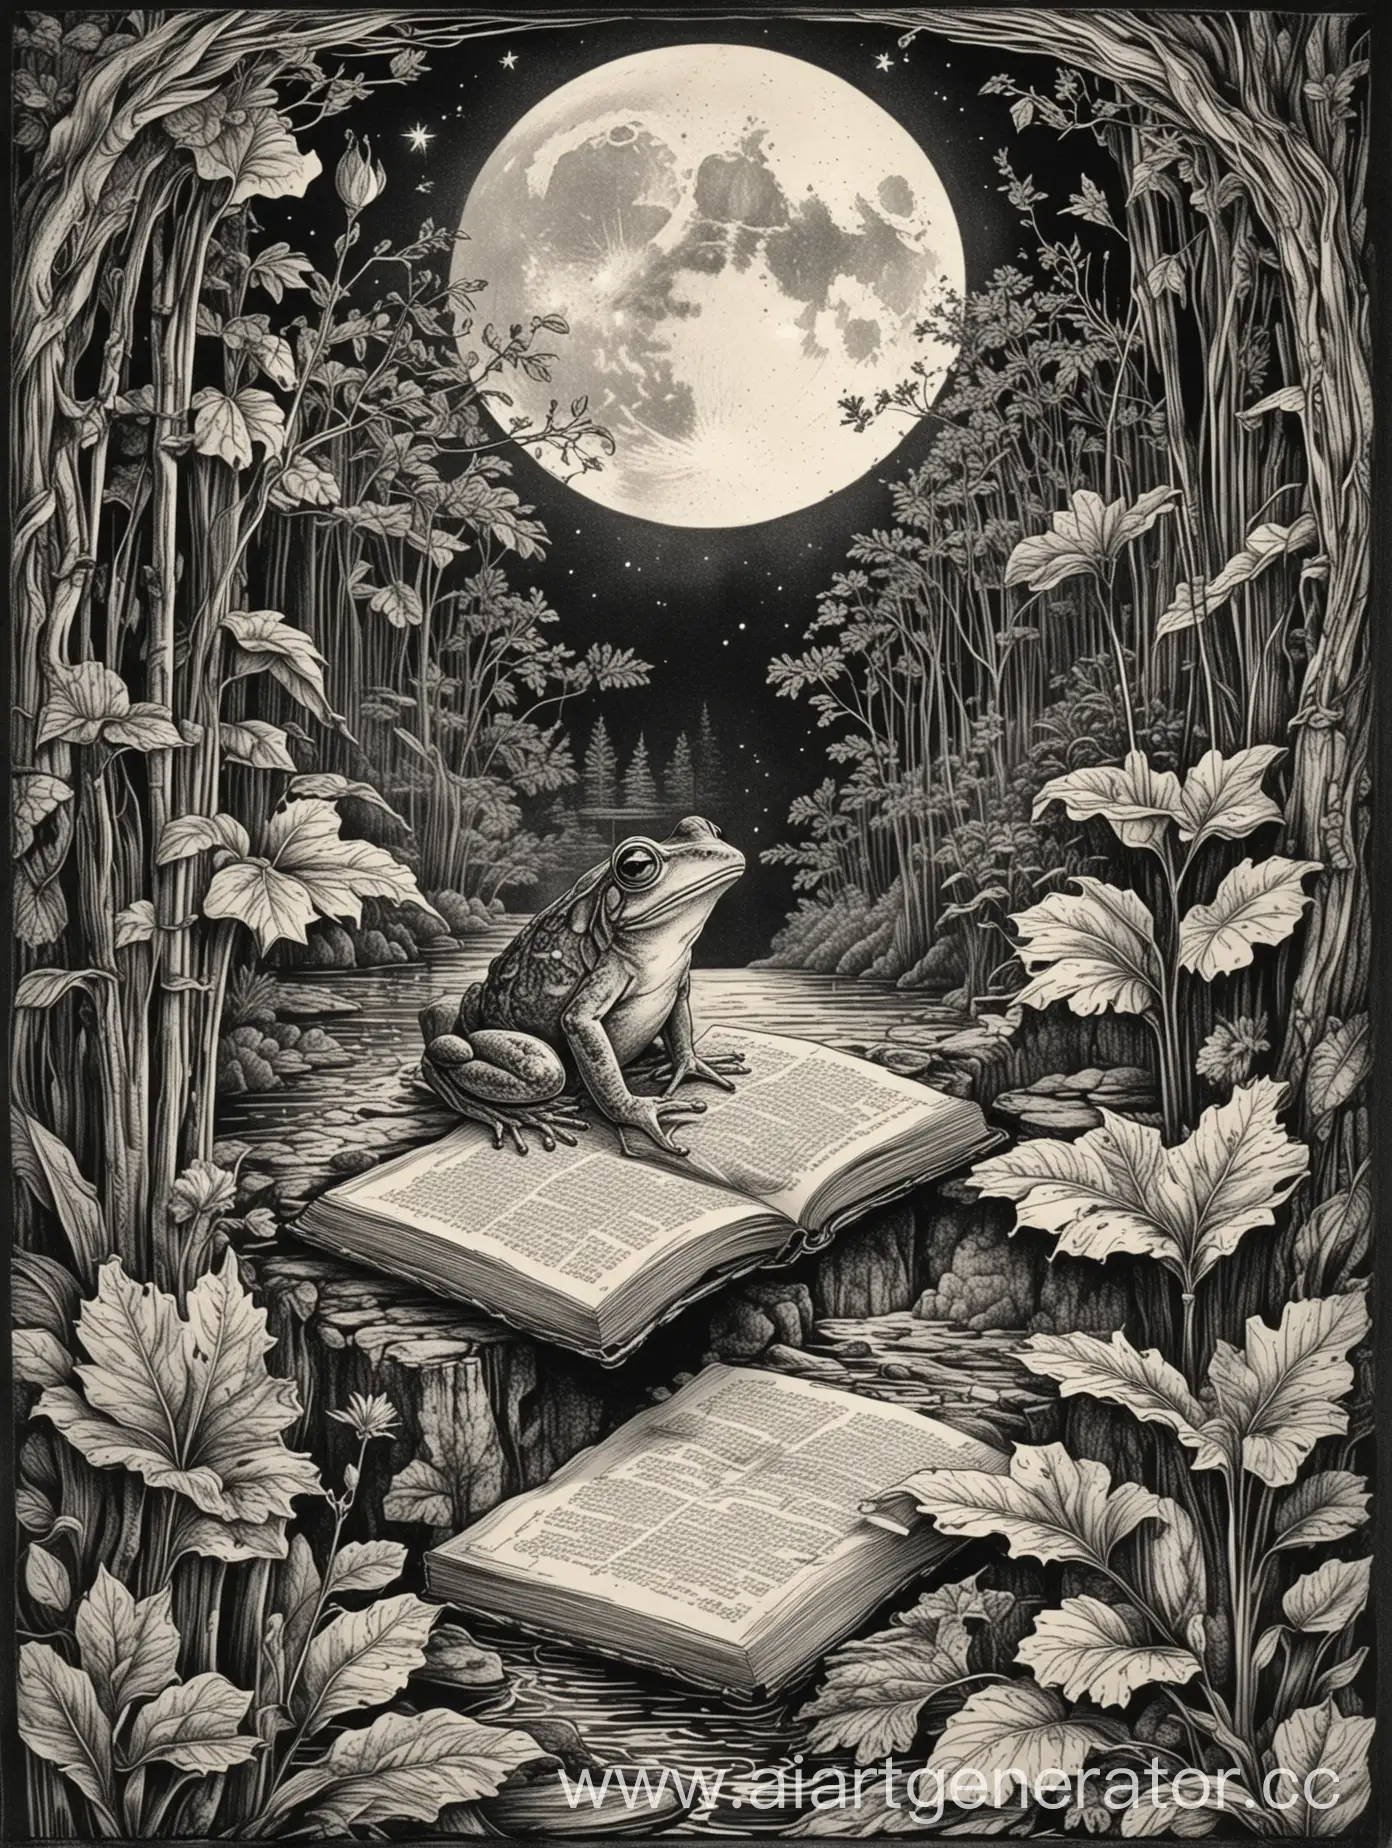 рисунок в линиях, контурный рисунок, черно-белое изображение, мало деталей, рамка с узором из листьев, экслибрис, лягушка сидит в пледе и читает книгу, водопад, луна, лунный вечер, линейная графика, линер, гравюра